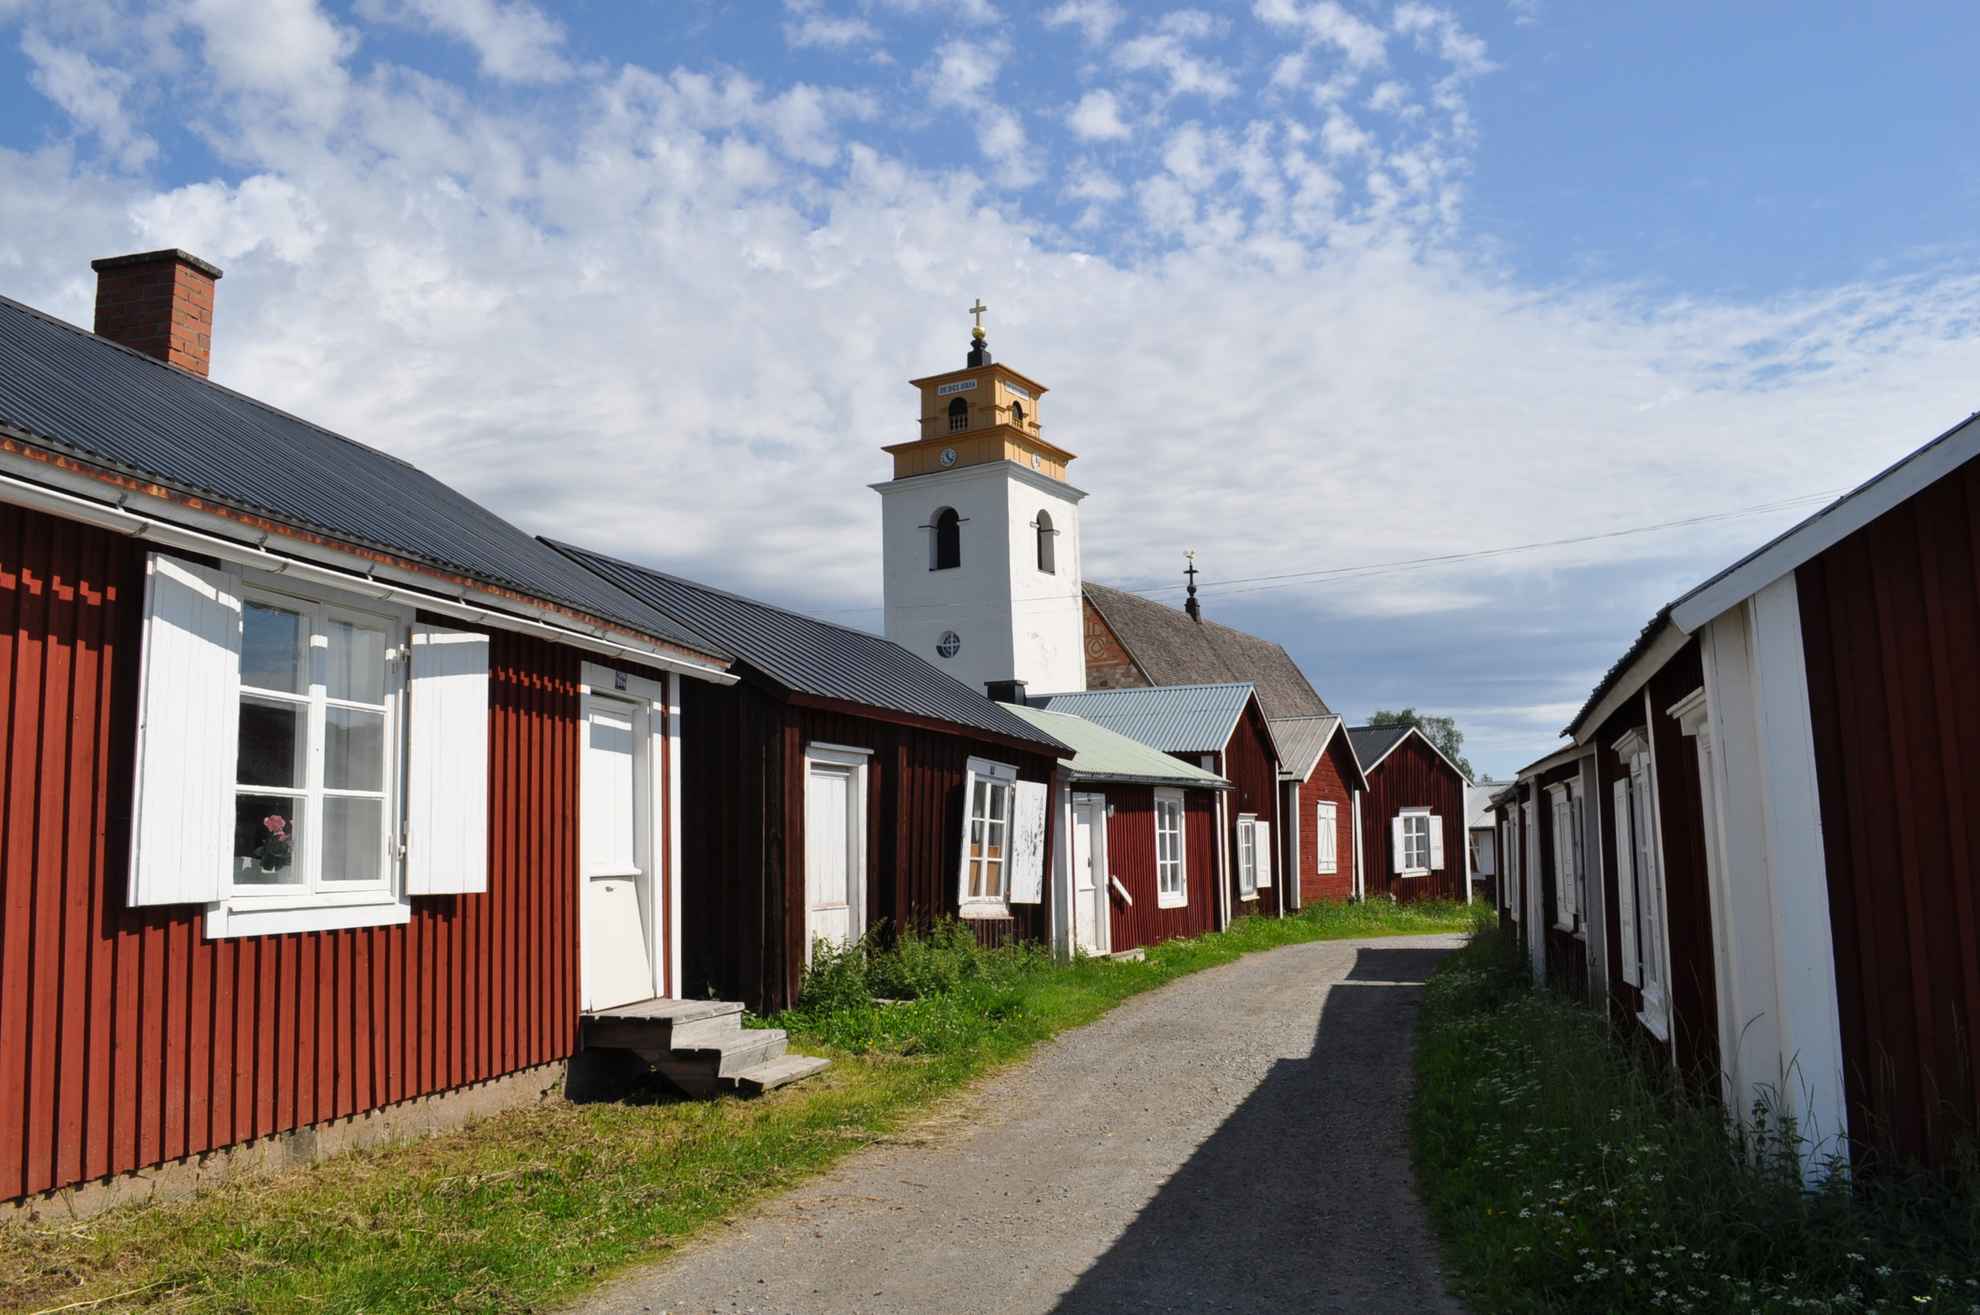 Le village-église de Gammelstad dans le nord de la Suède